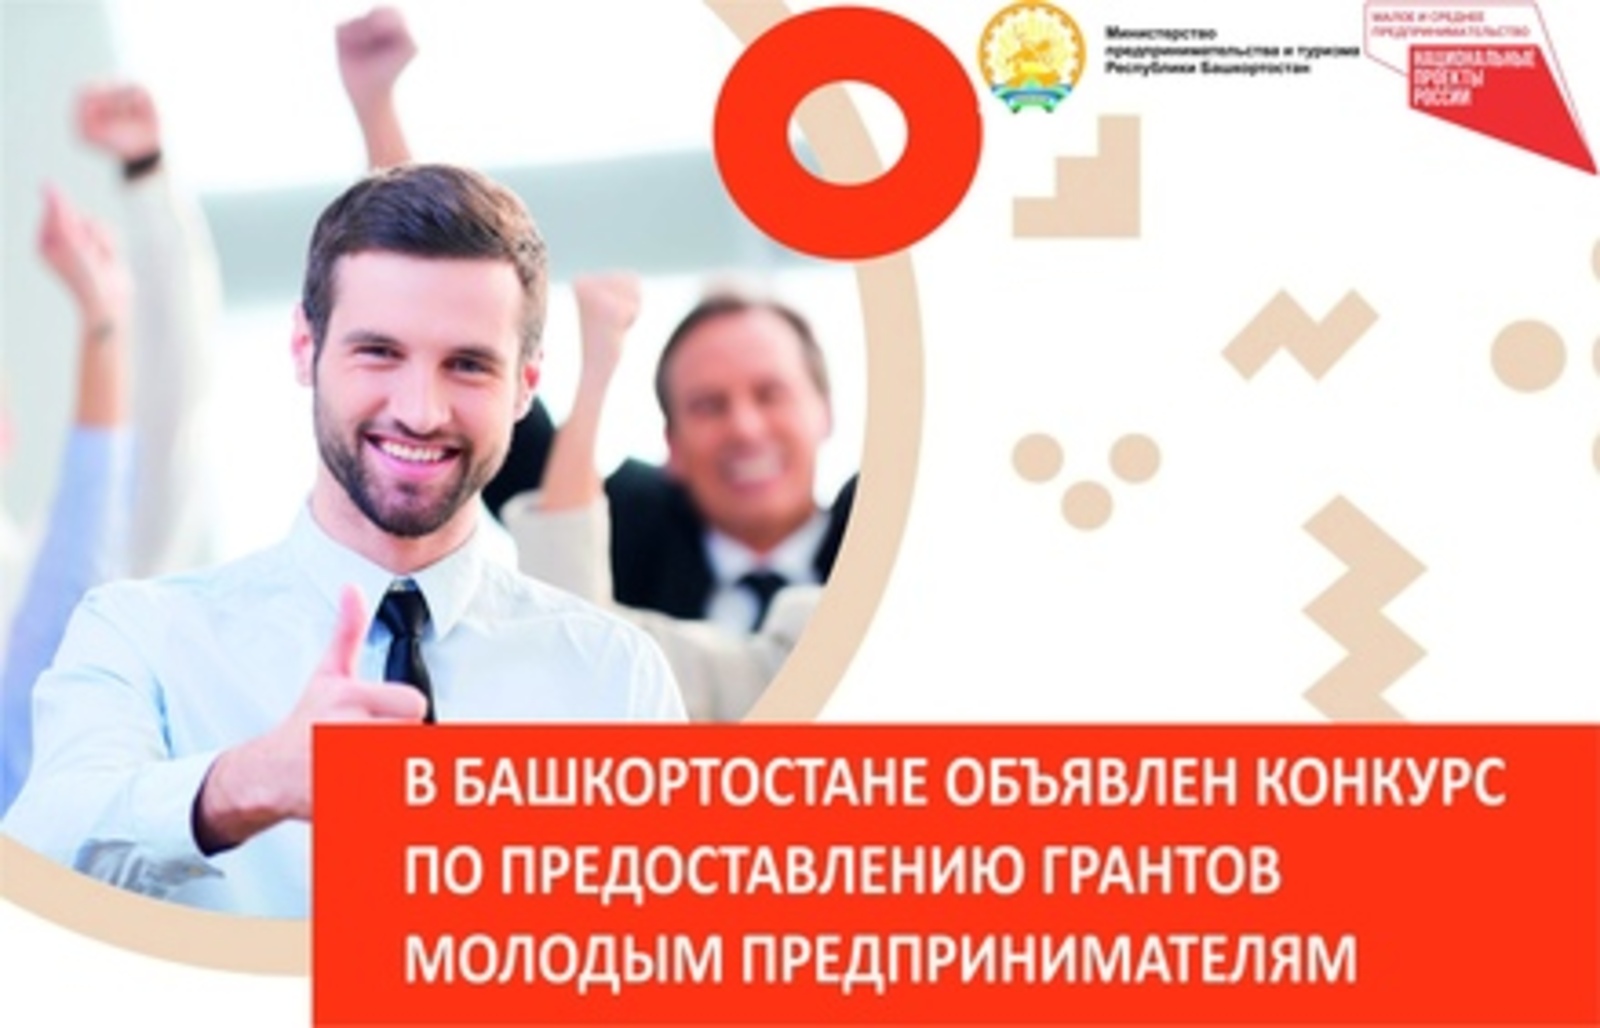 В Башкортостане объявлен конкурс по предоставлению грантов молодым предпринимателям